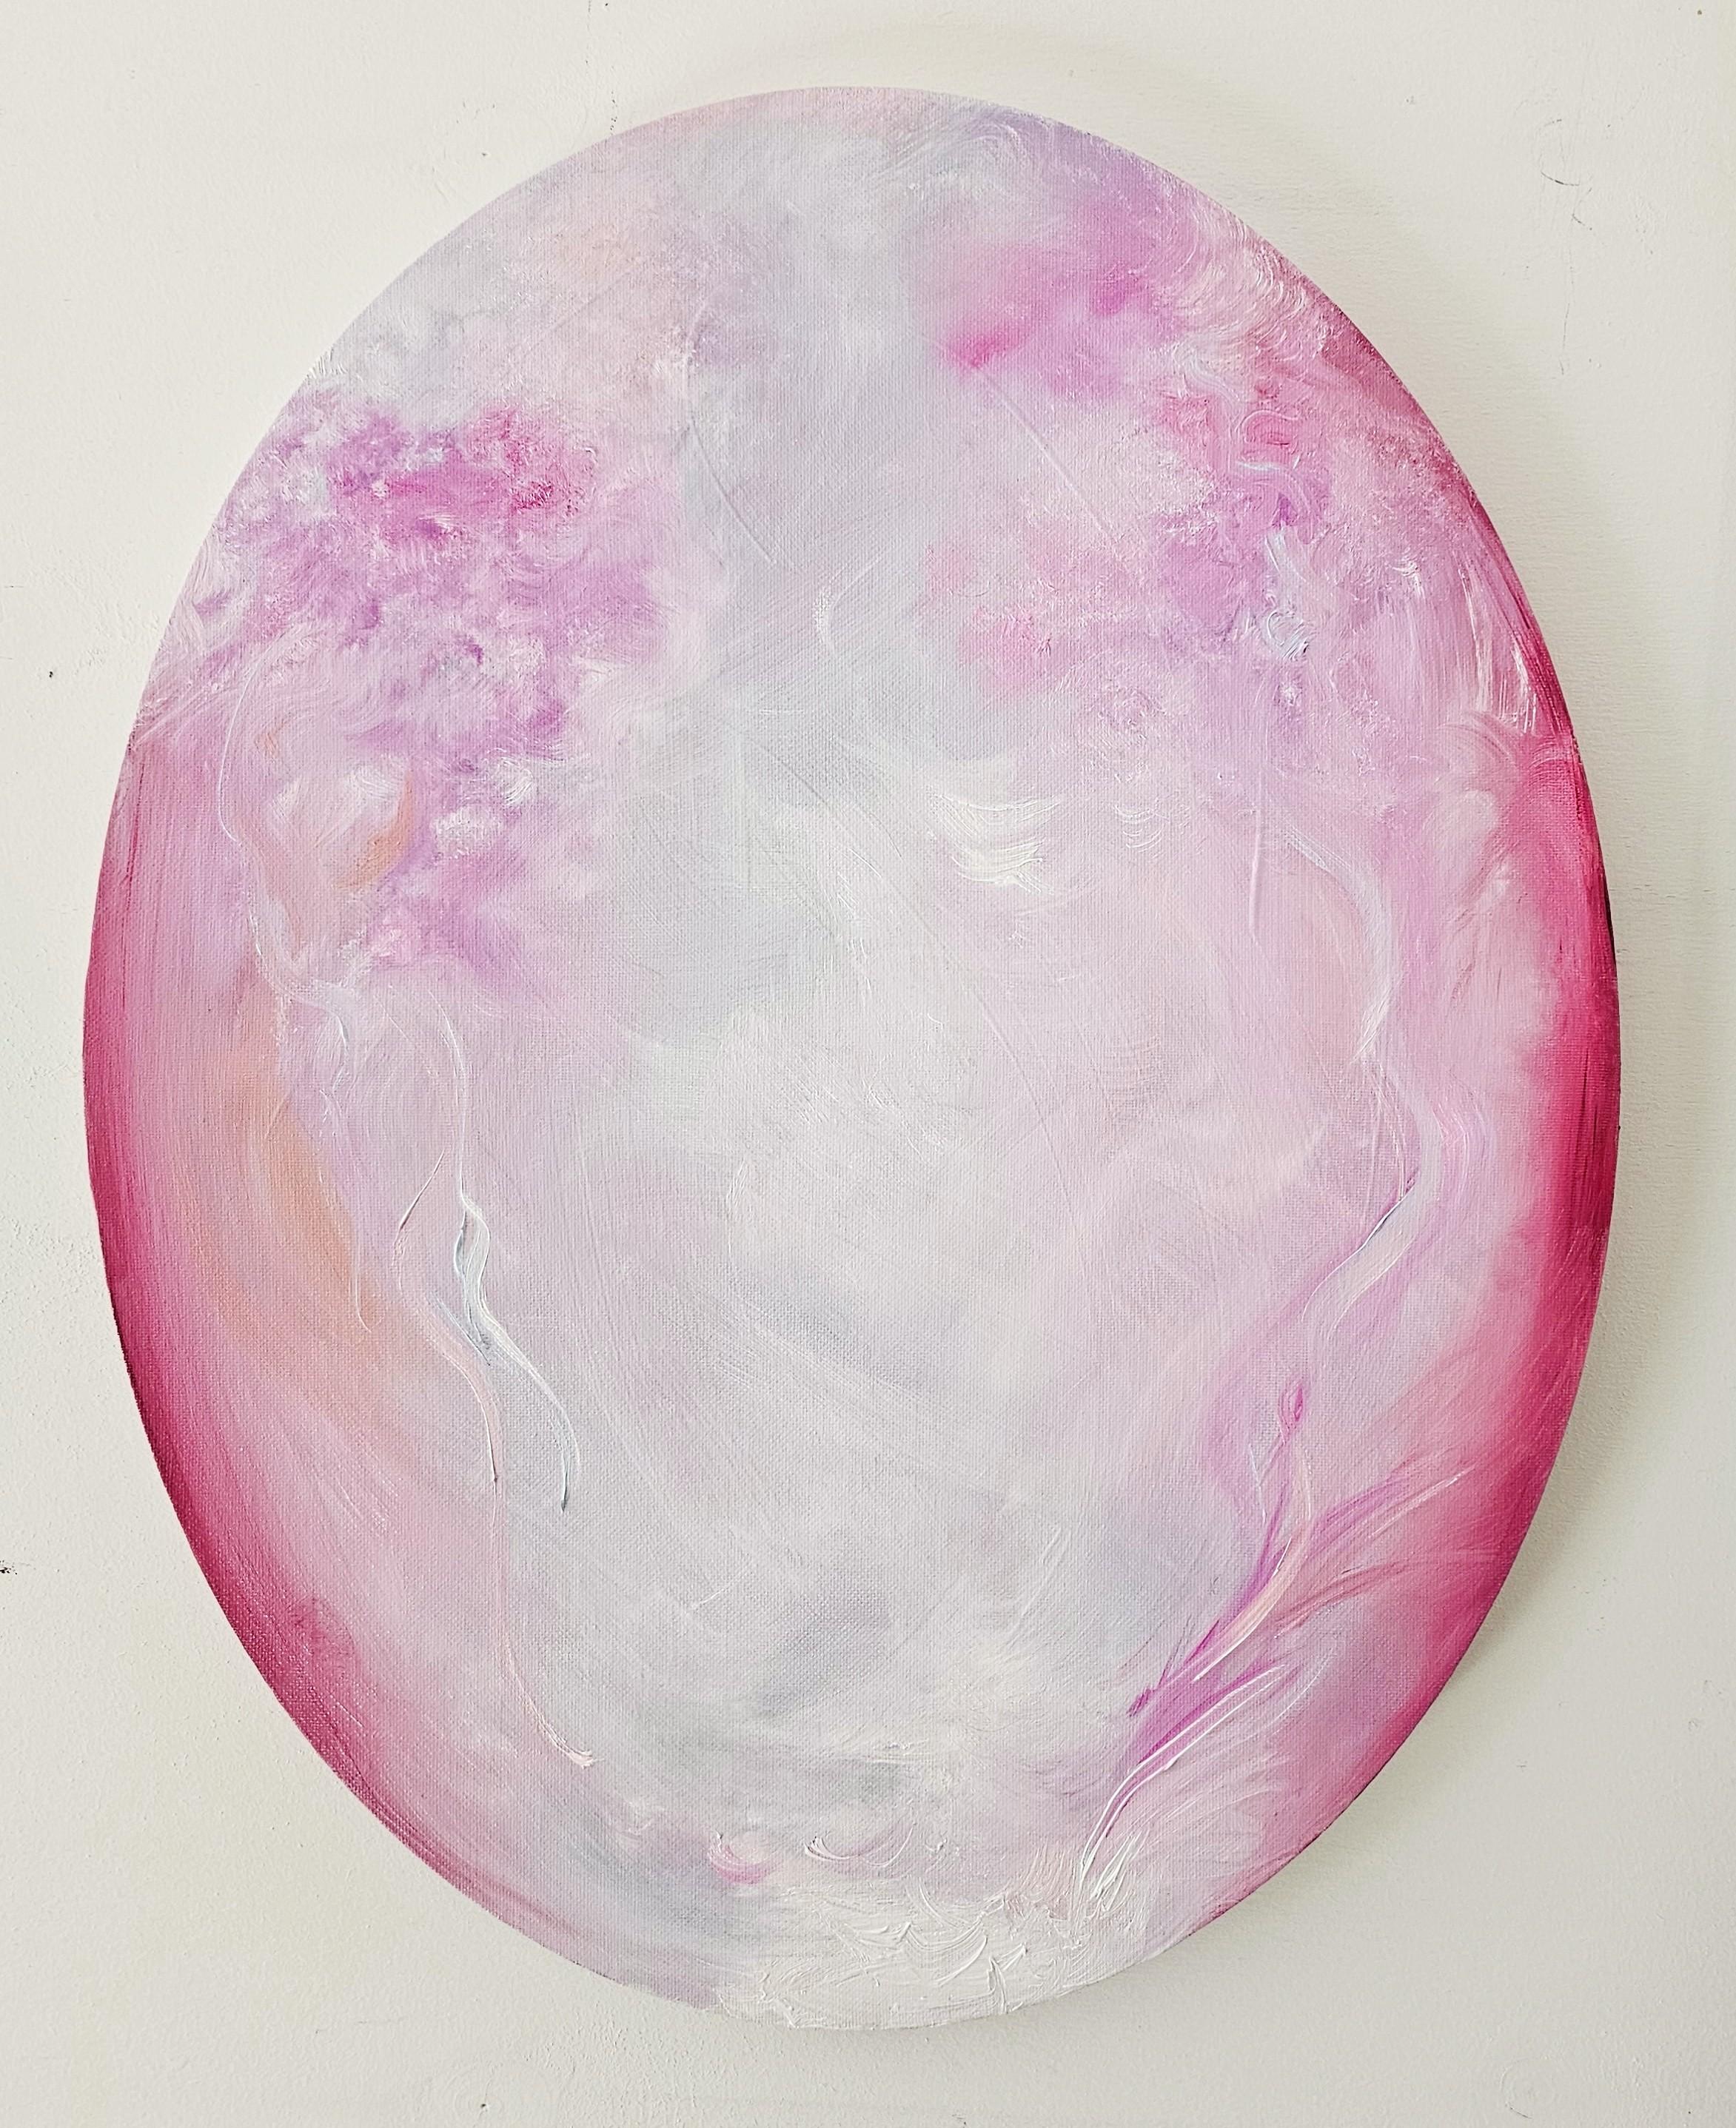 I fell in love - Rosa ovales abstraktes Gemälde (Grau), Abstract Painting, von Jennifer L. Baker